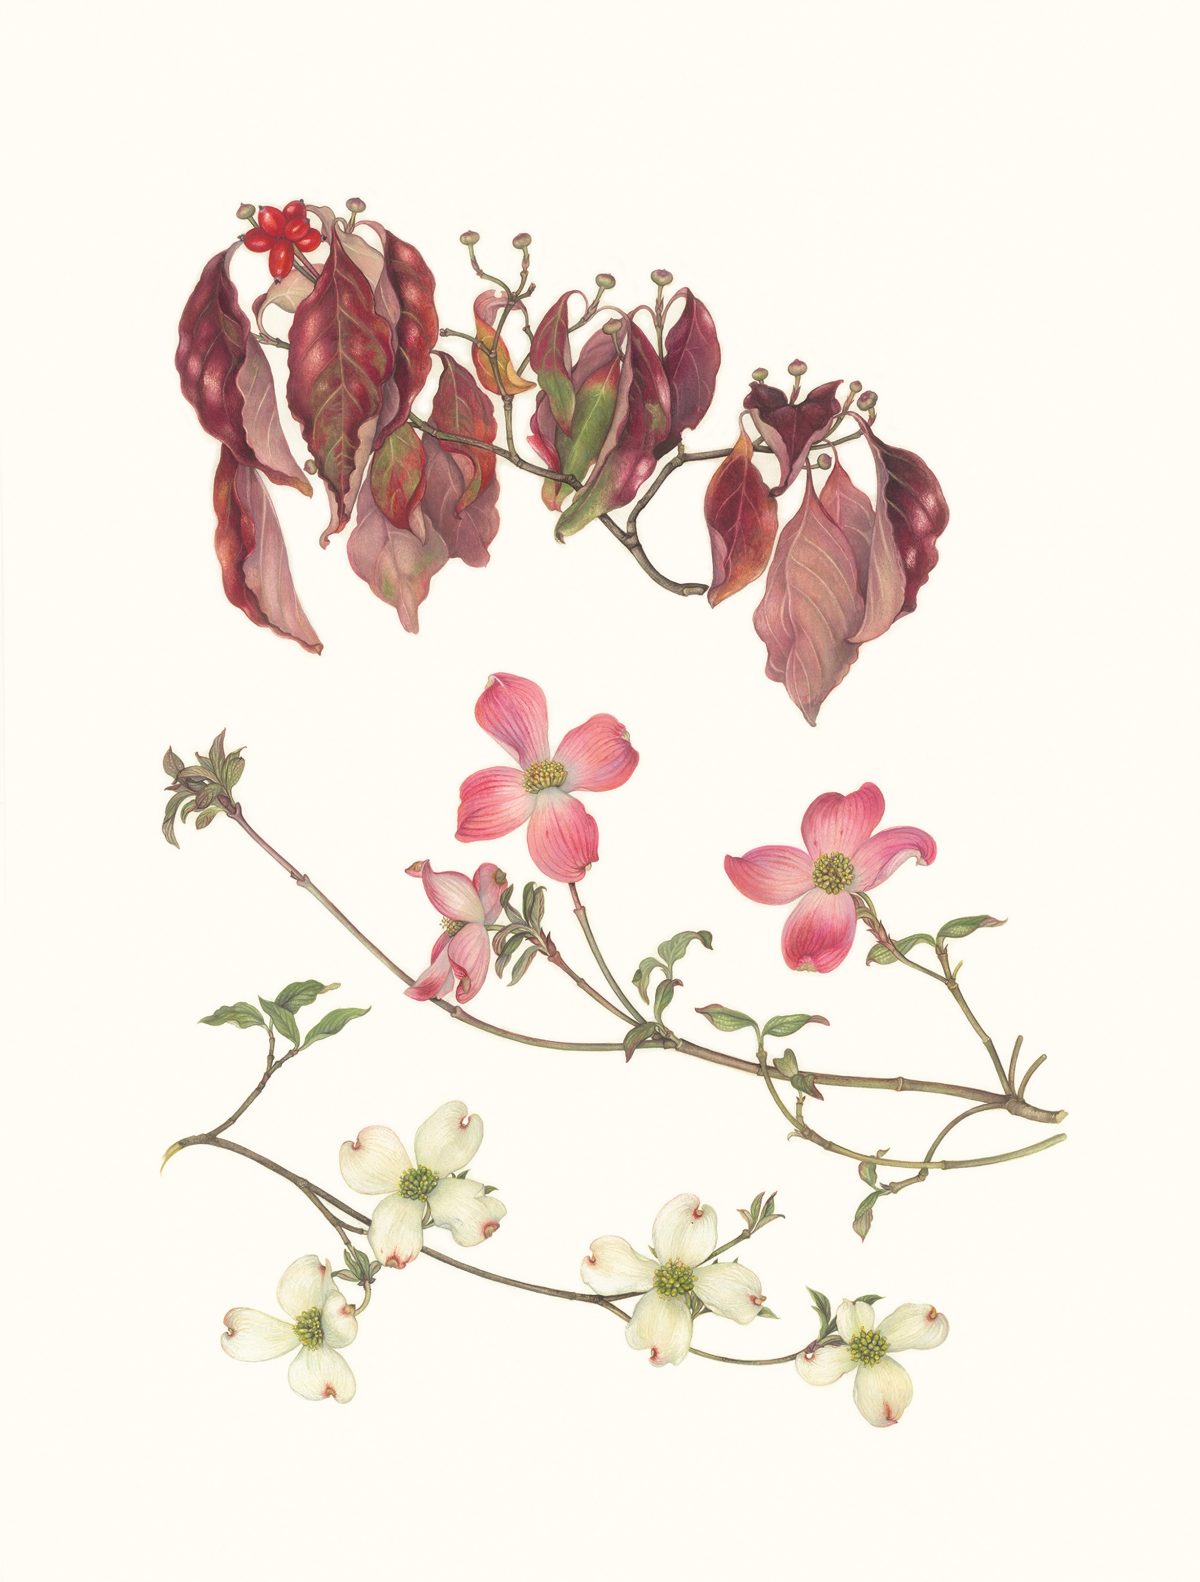 Tranh minh họa “Hoa Sơn Thù Du (Cornus florida) vào Mùa Thu và Mùa Xuân” của họa sĩ Margaret Farr. Tranh màu nước trên giấy, kích cỡ 23 inch x 17 inch. (Ảnh: Margaret Farr)